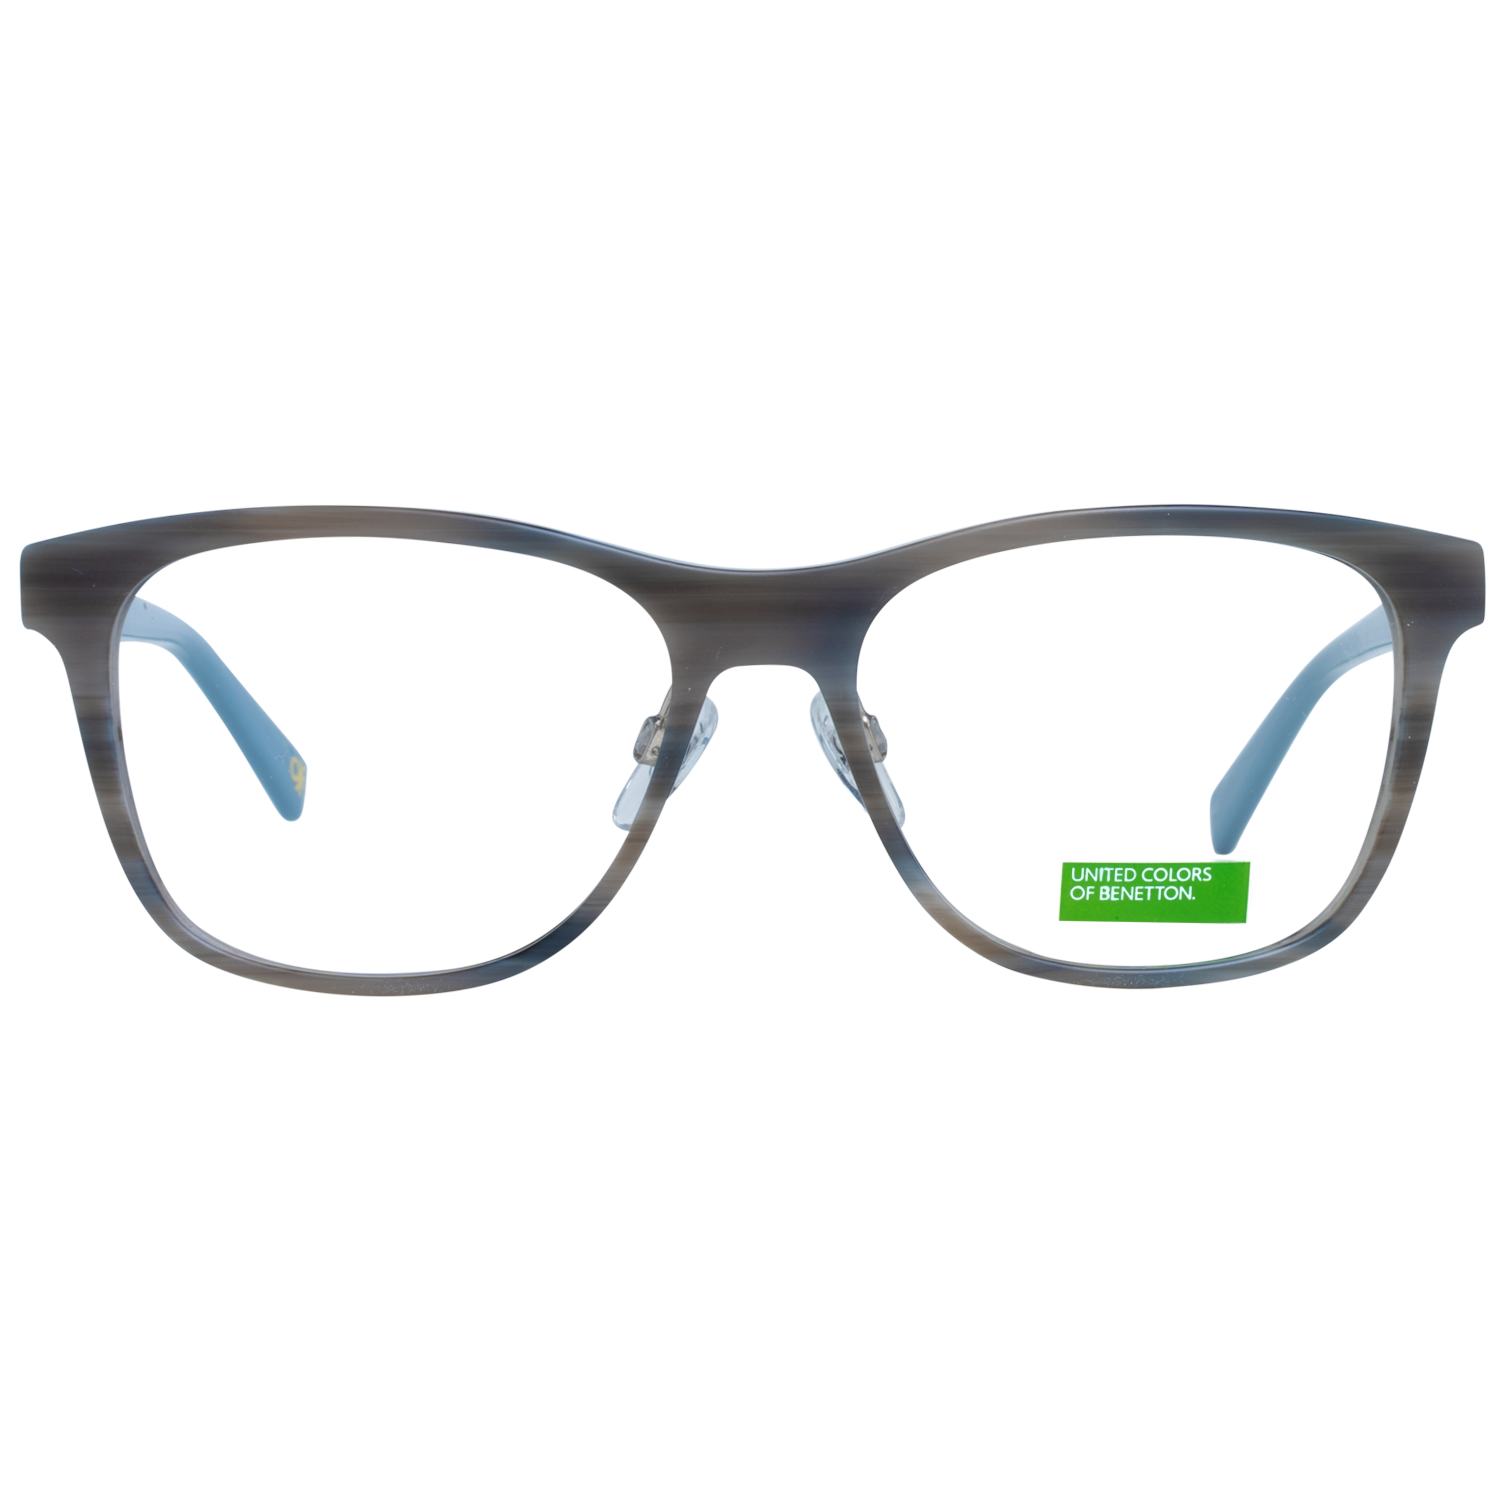 Benetton Frames Benetton Glasses Frames BEO1003 948 54 Eyeglasses Eyewear UK USA Australia 